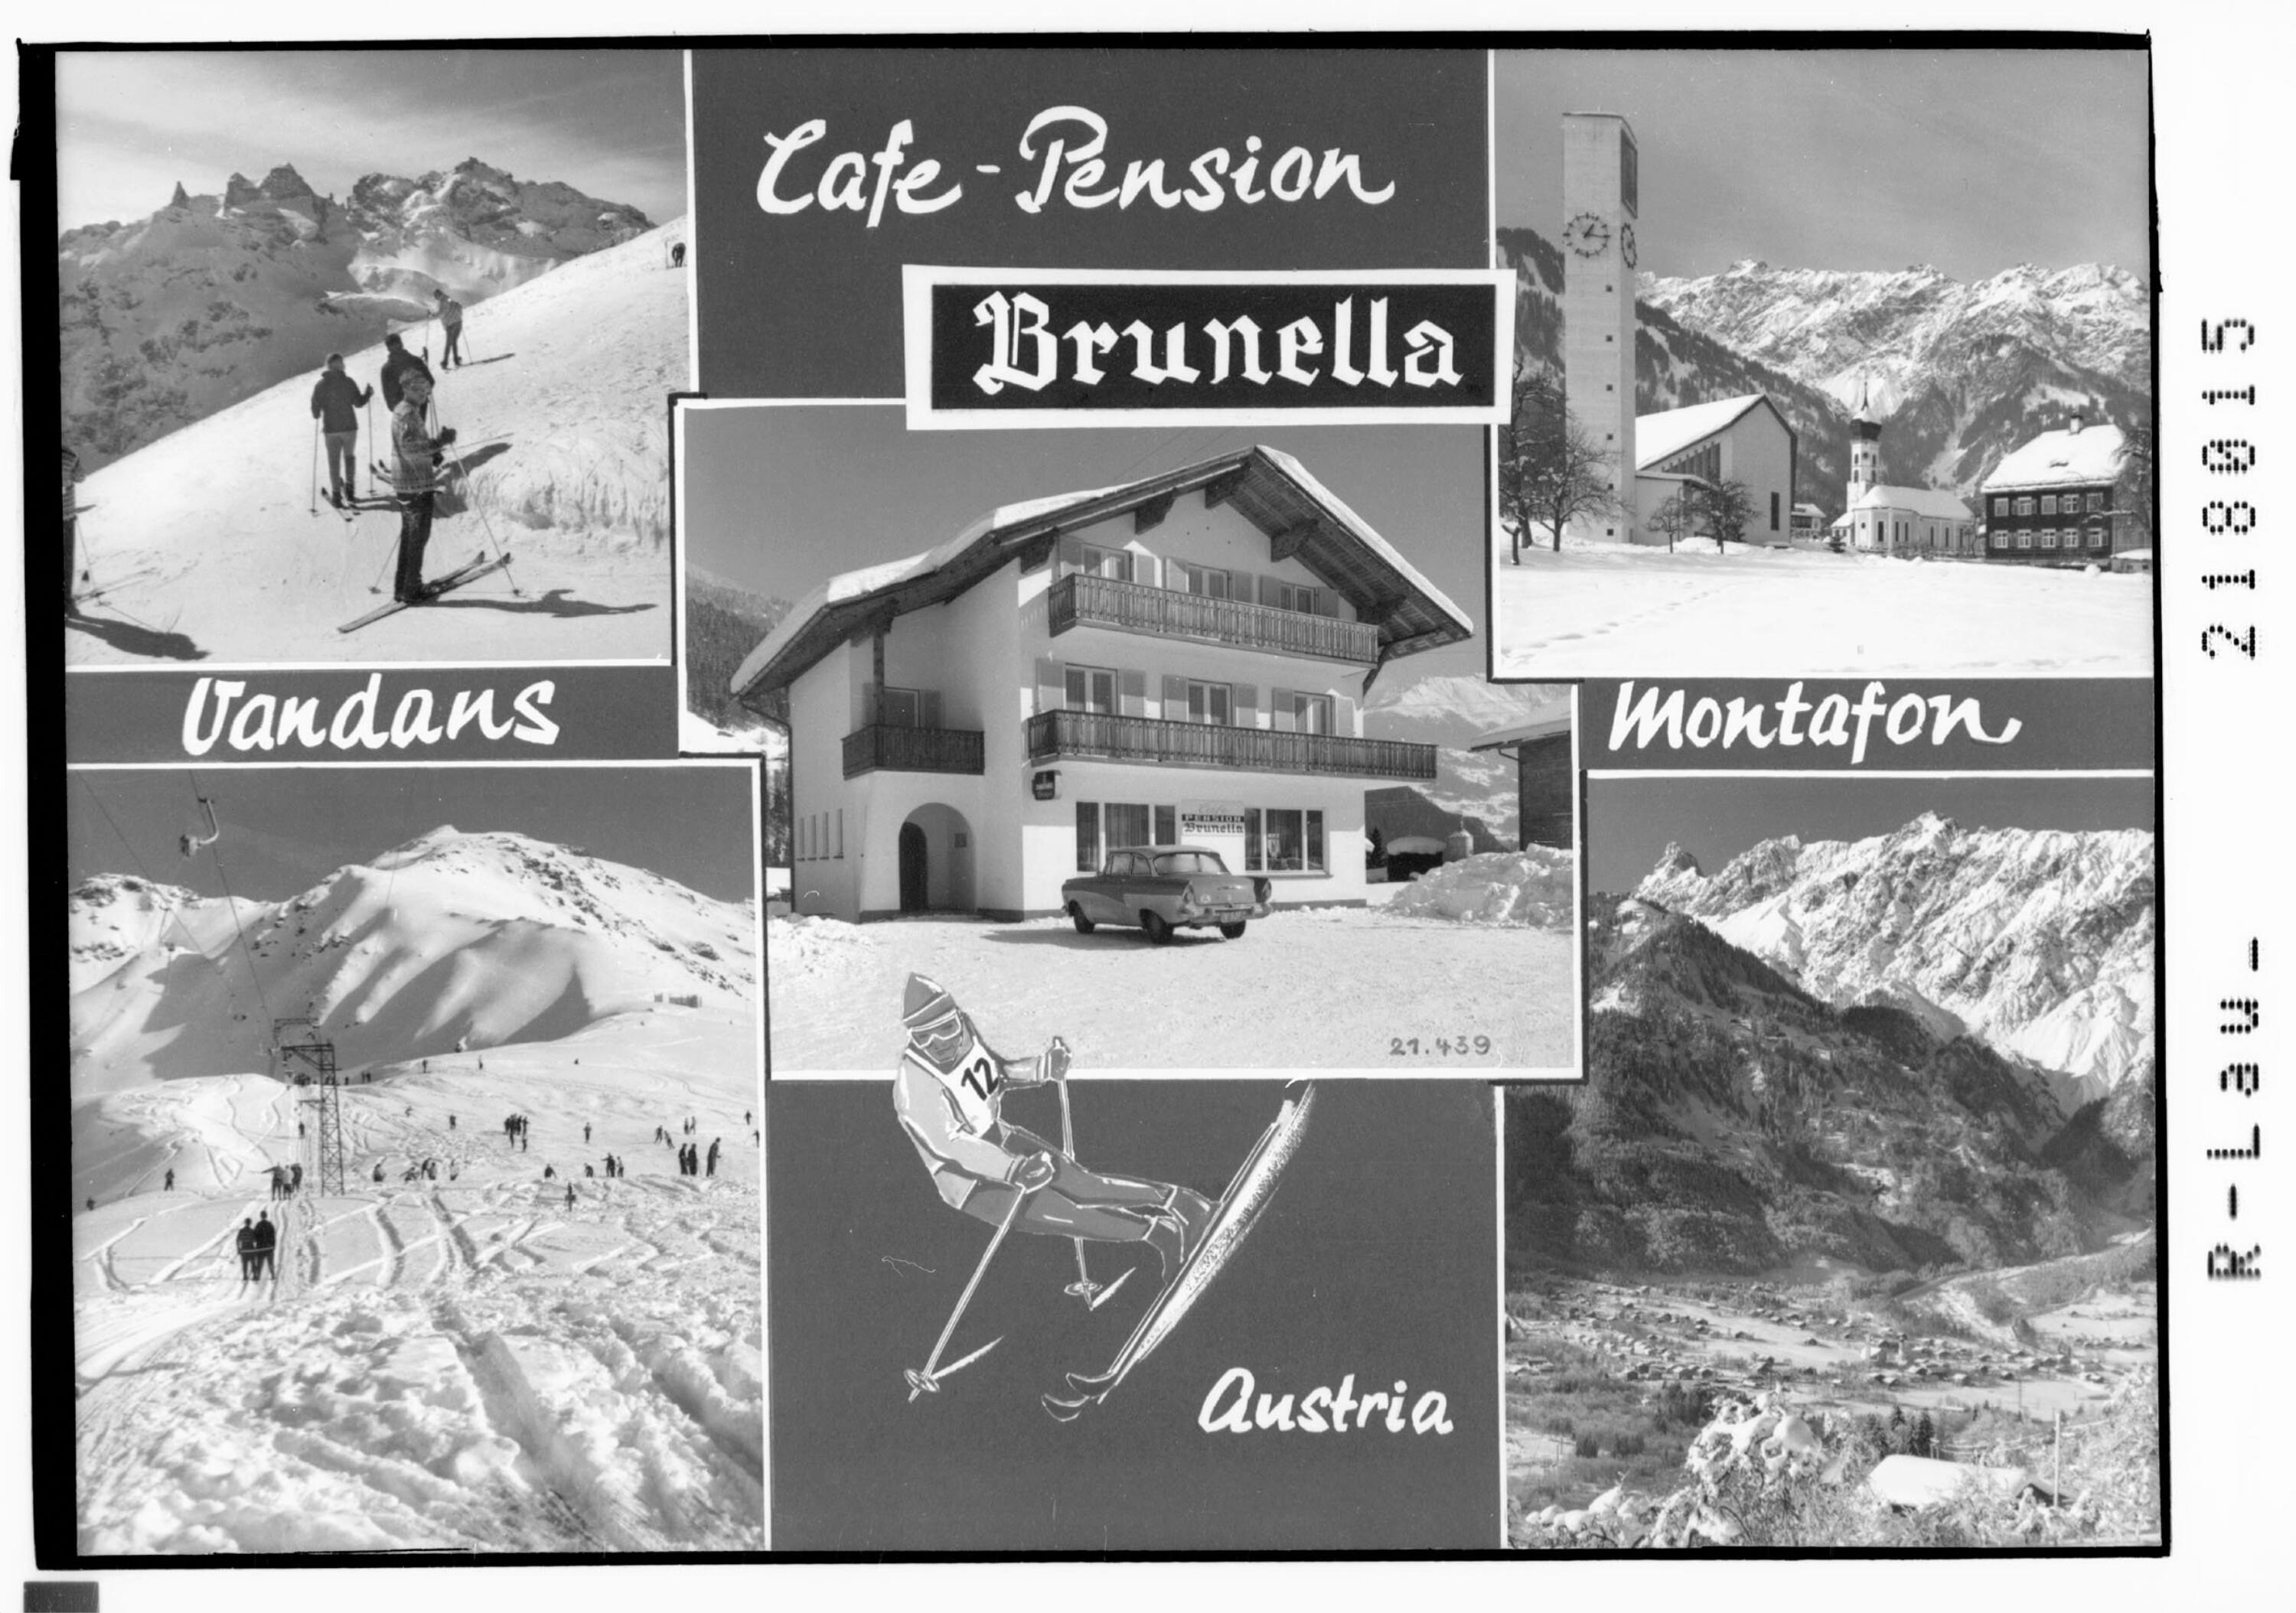 Cafe Pension Brunella Vandans Montafon Austria></div>


    <hr>
    <div class=